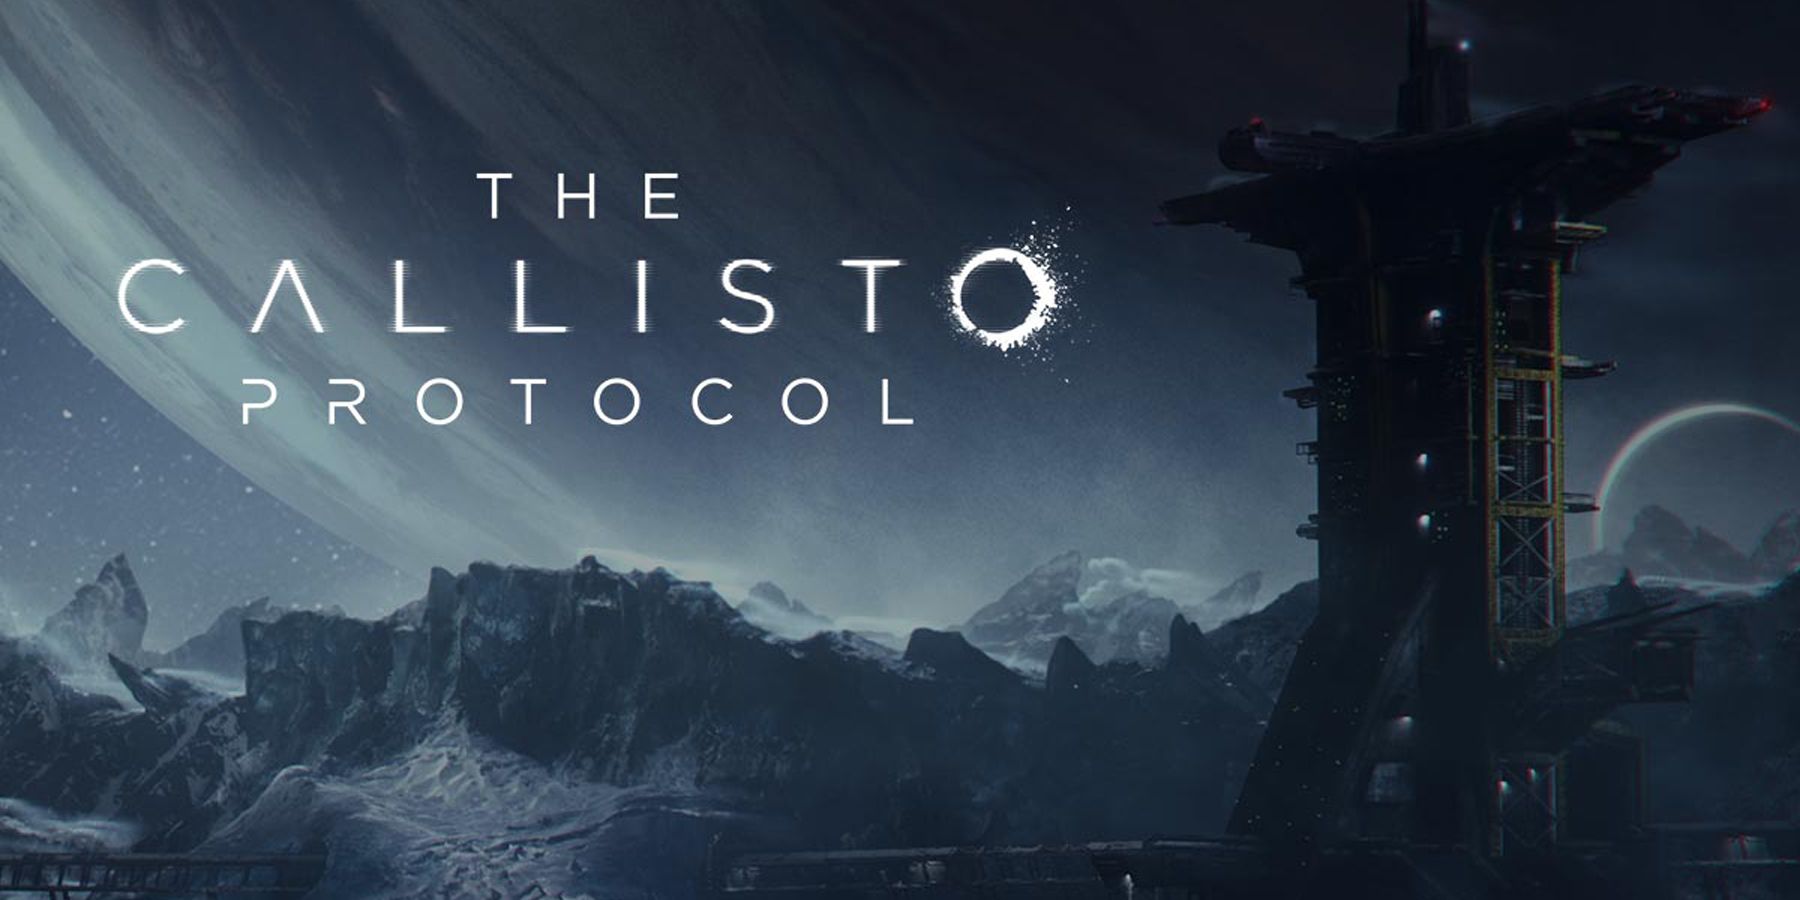 The Callisto Protocol title